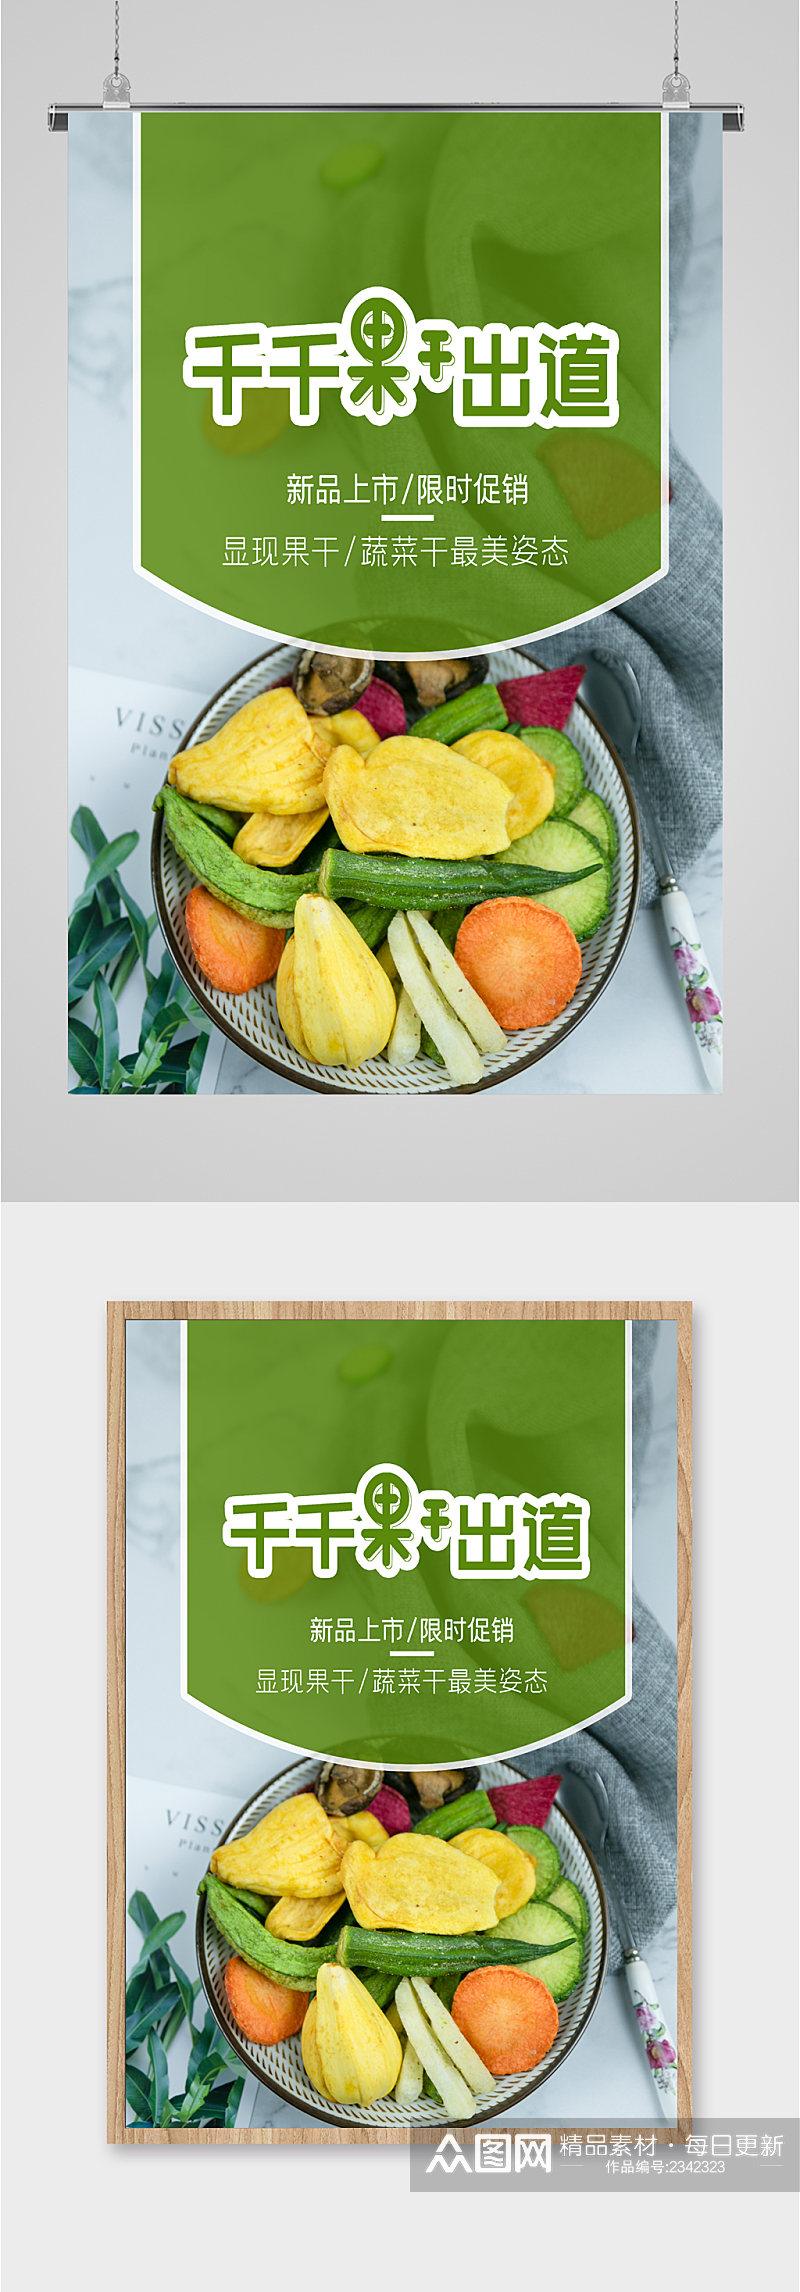 水果蔬菜超市海报素材